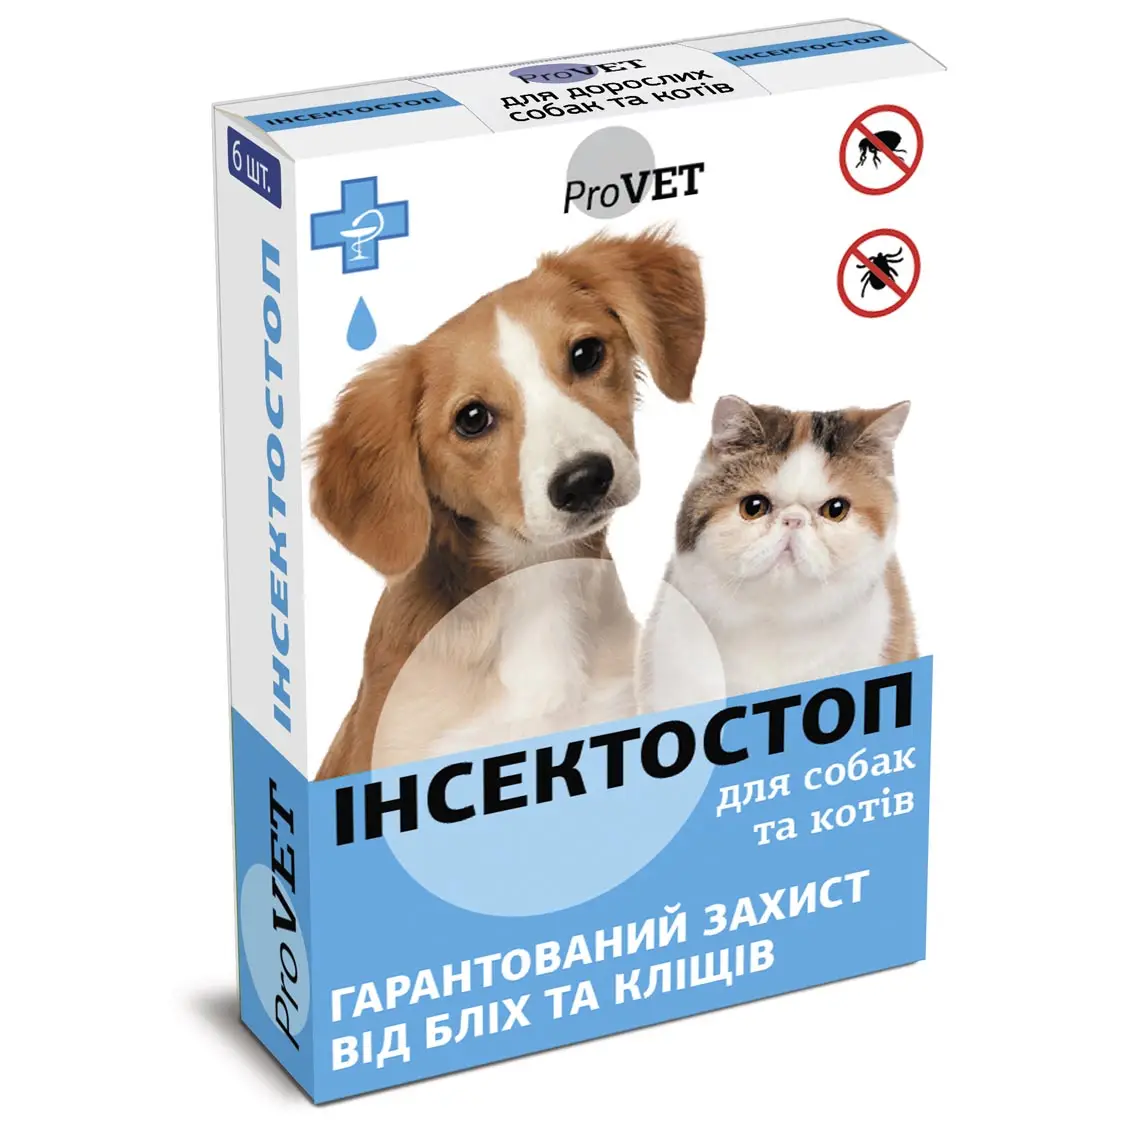 Капли на холку для кошек и собак ProVET Инсектостоп, от внешних паразитов, от 4 до 10 кг, 6 пипеток по 0,8 мл (PR020026) - фото 1